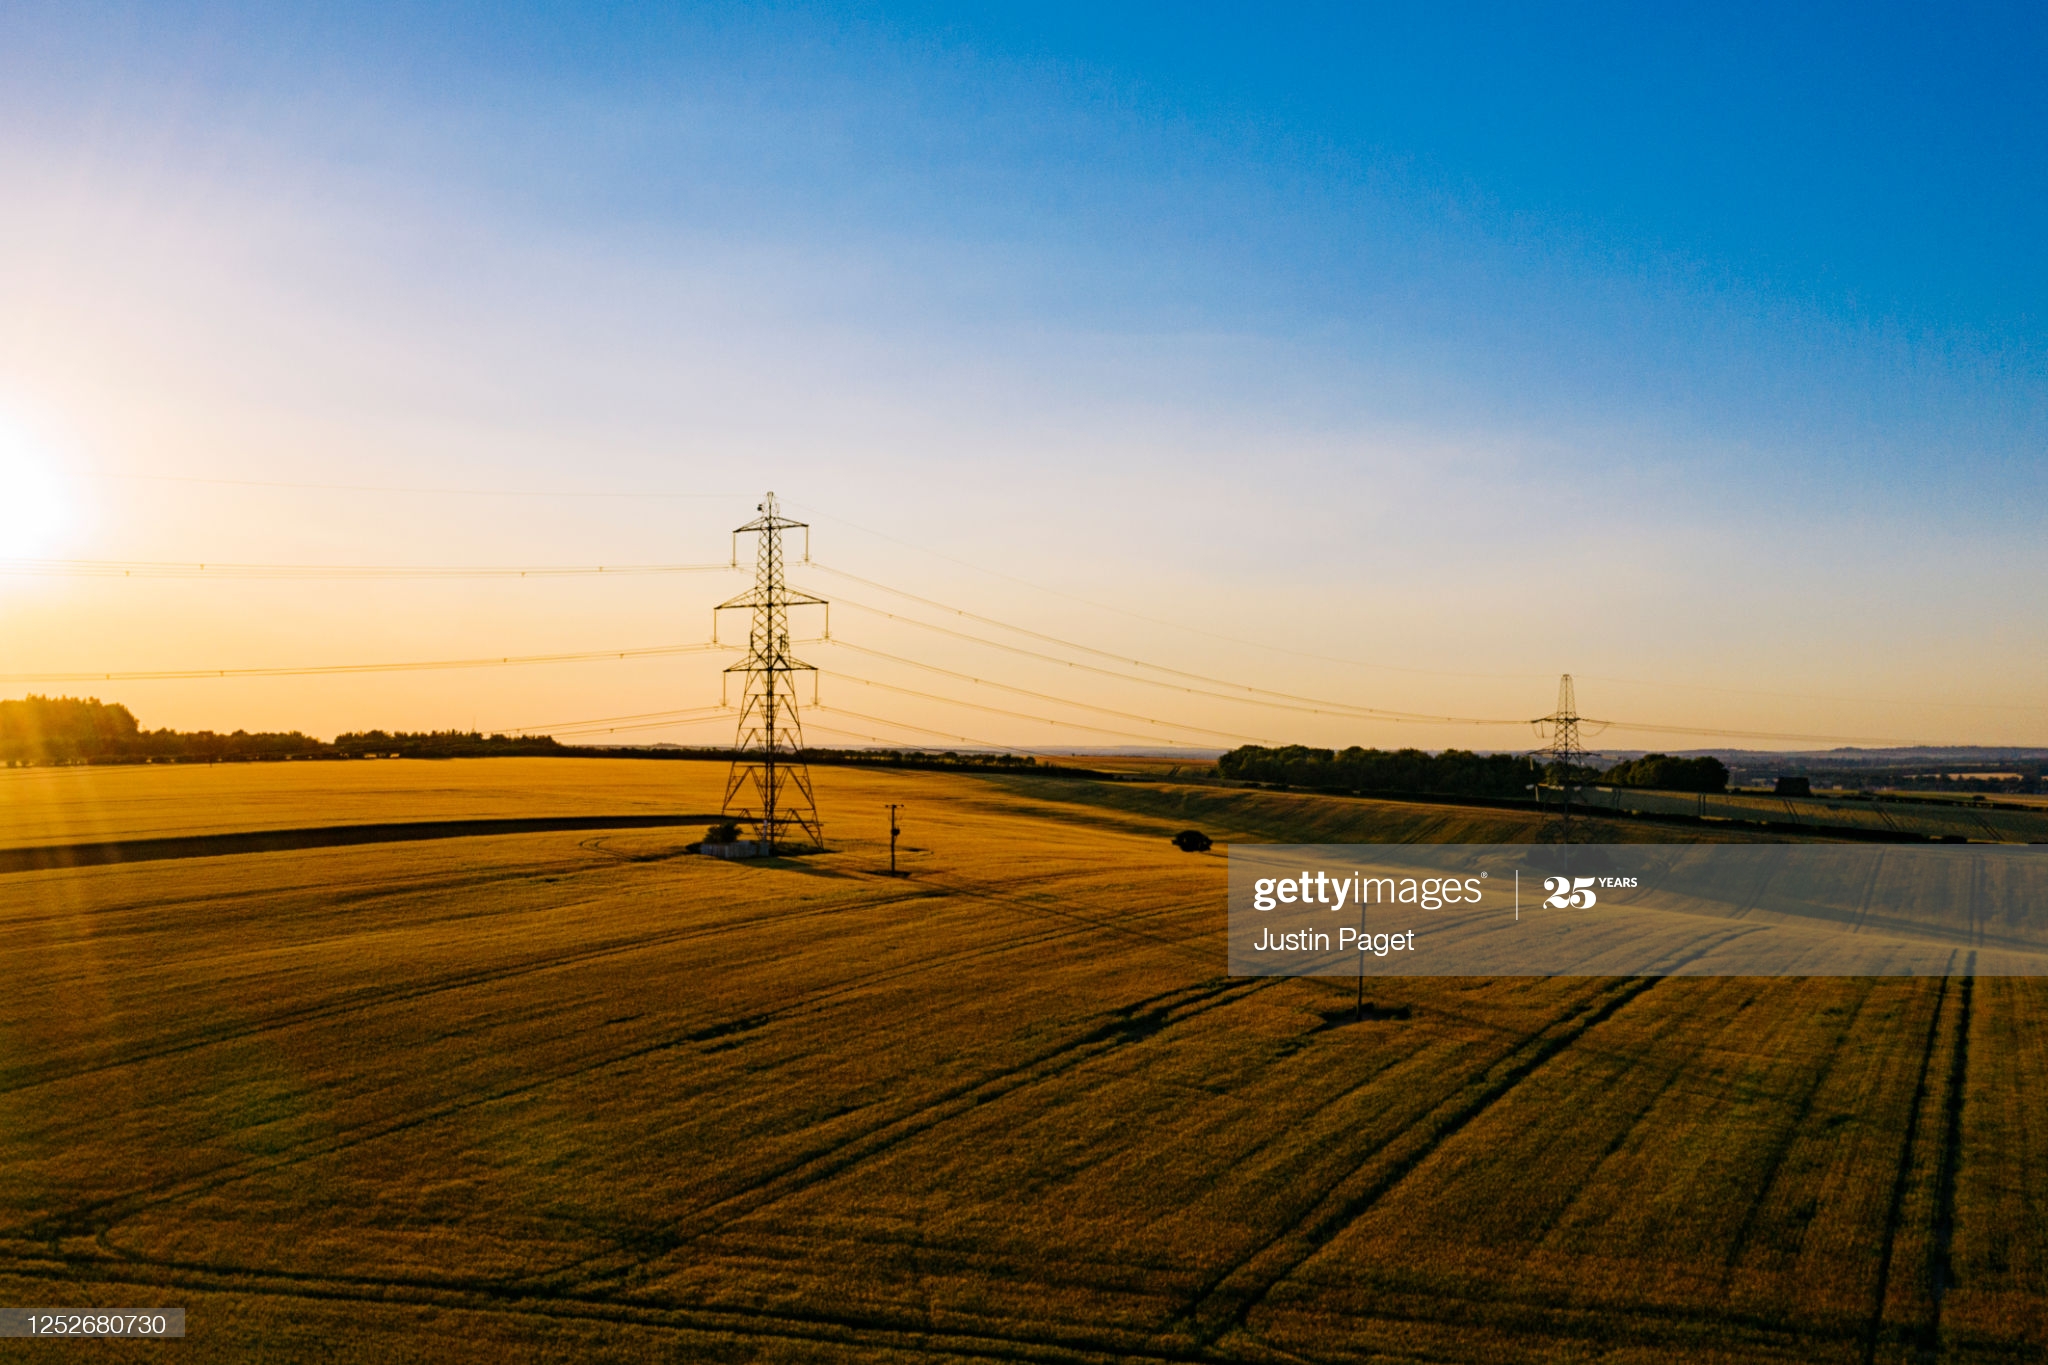 Pylon-sunset-field